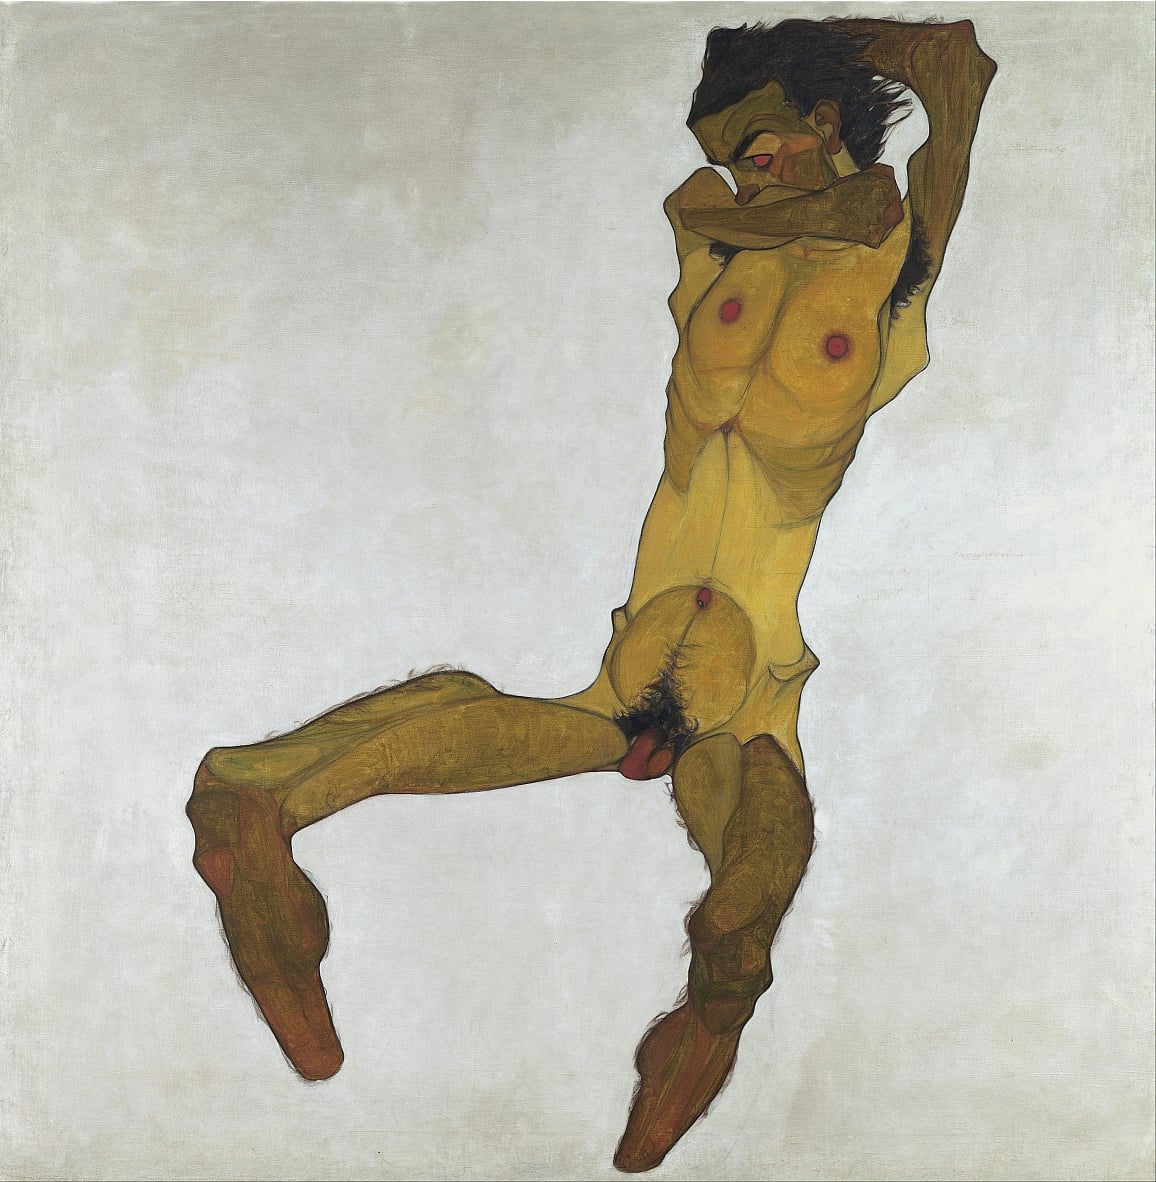 Sitzender Männlicher Akt (Selbstporträt) von Egon Schiele, 1910